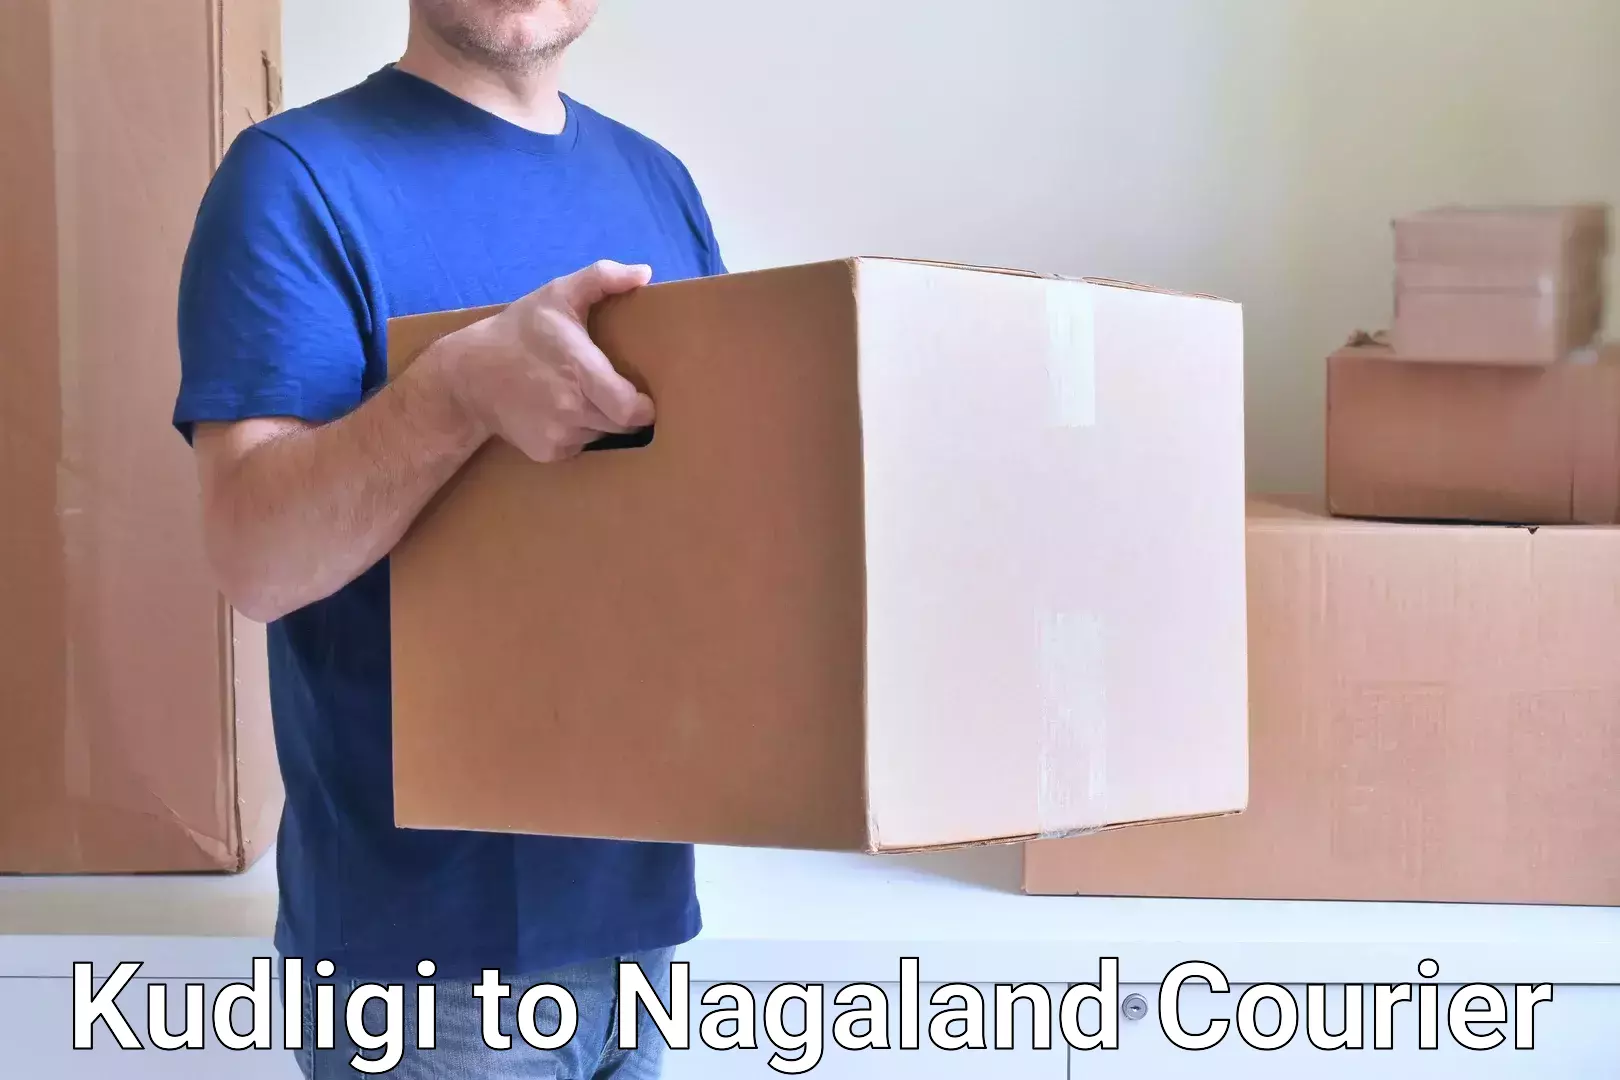 Courier service partnerships Kudligi to NIT Nagaland